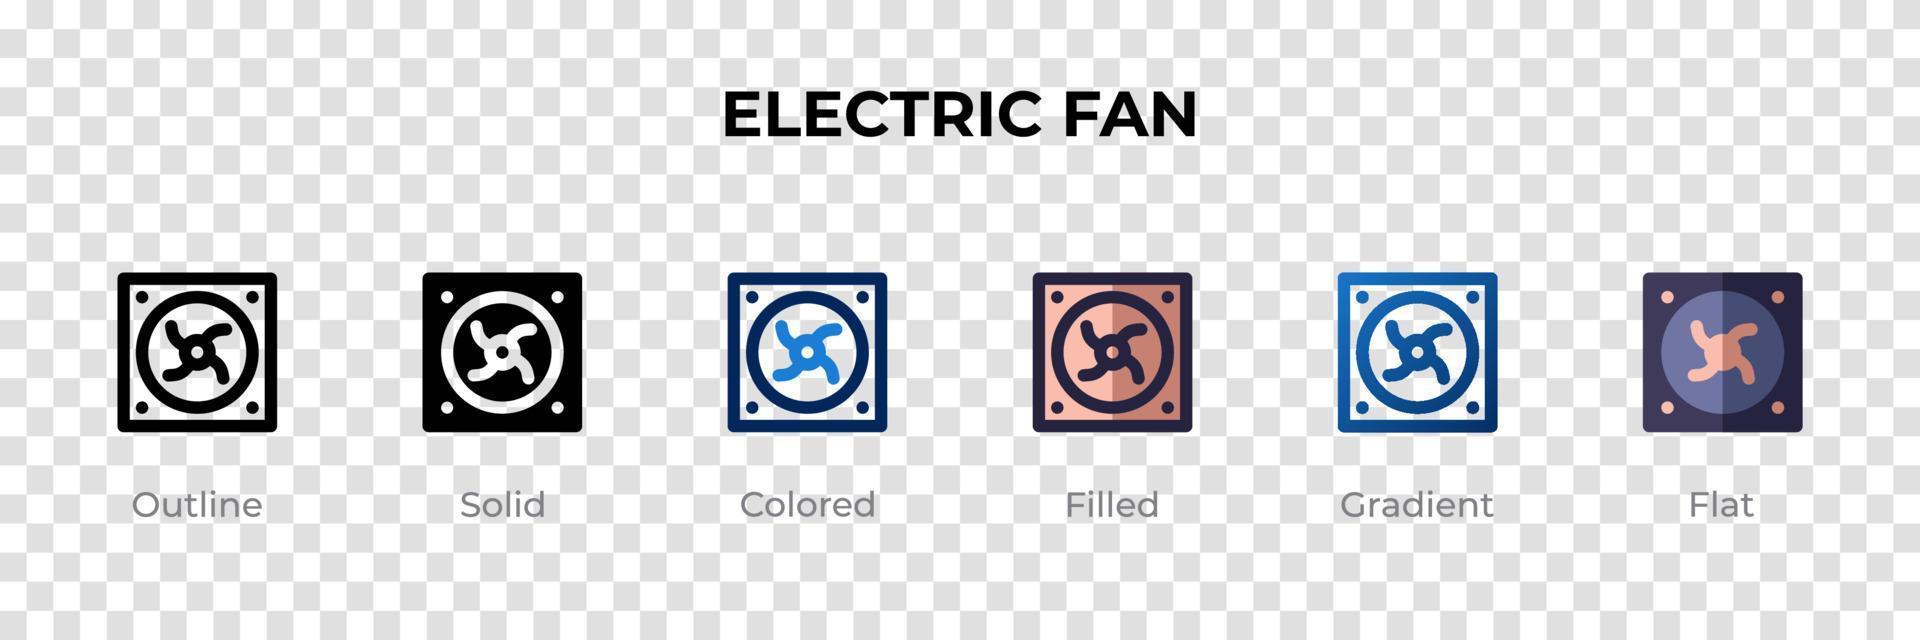 icono de ventilador eléctrico en un estilo diferente. iconos vectoriales de ventiladores eléctricos diseñados en contorno, sólido, coloreado, relleno, degradado y estilo plano. símbolo, ilustración de logotipo. ilustración vectorial vector